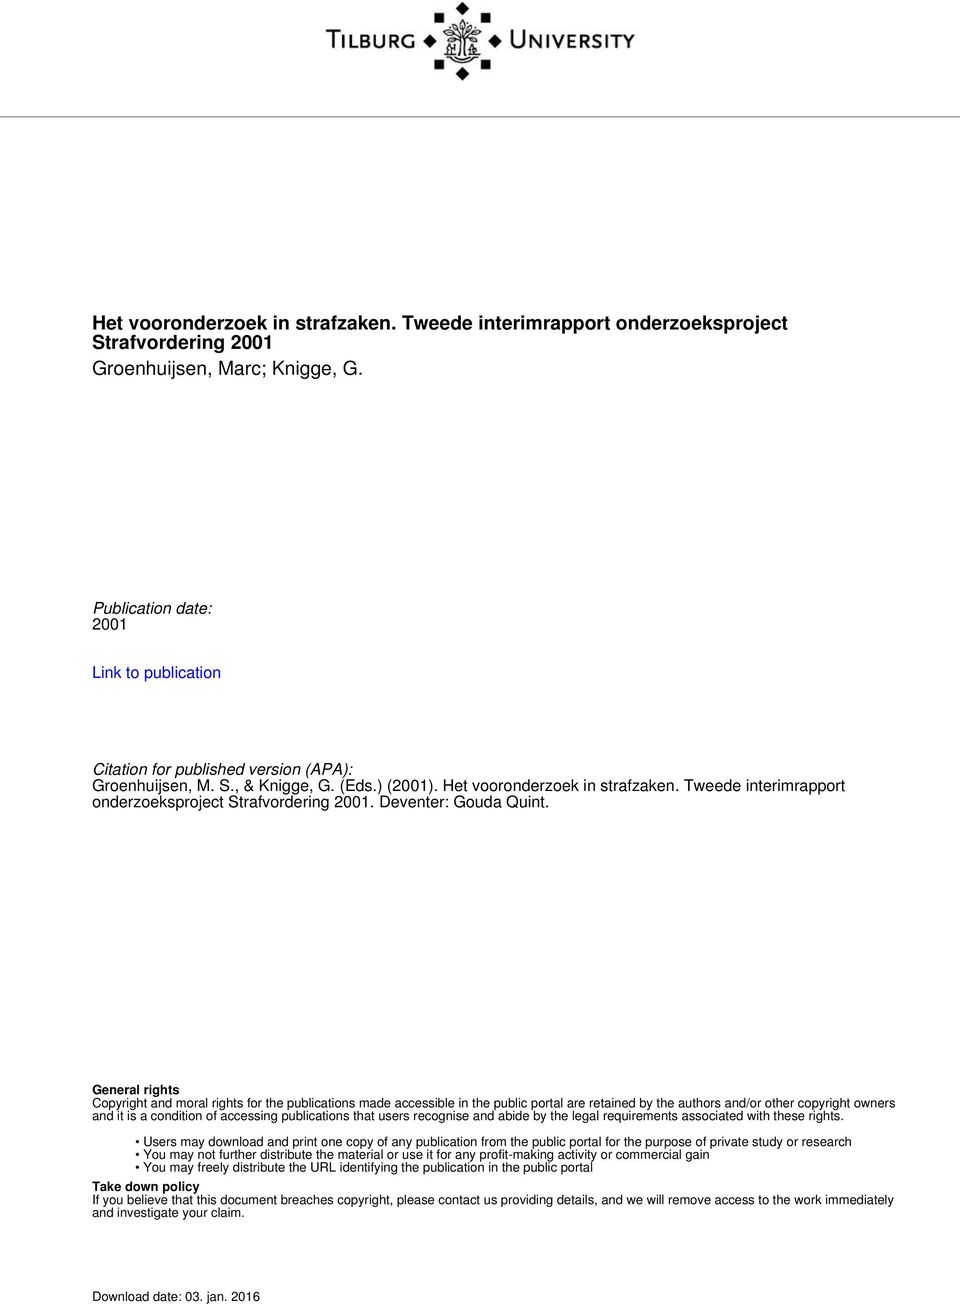 Tweede interimrapport onderzoeksproject Strafvordering 2001. Deventer: Gouda Quint.